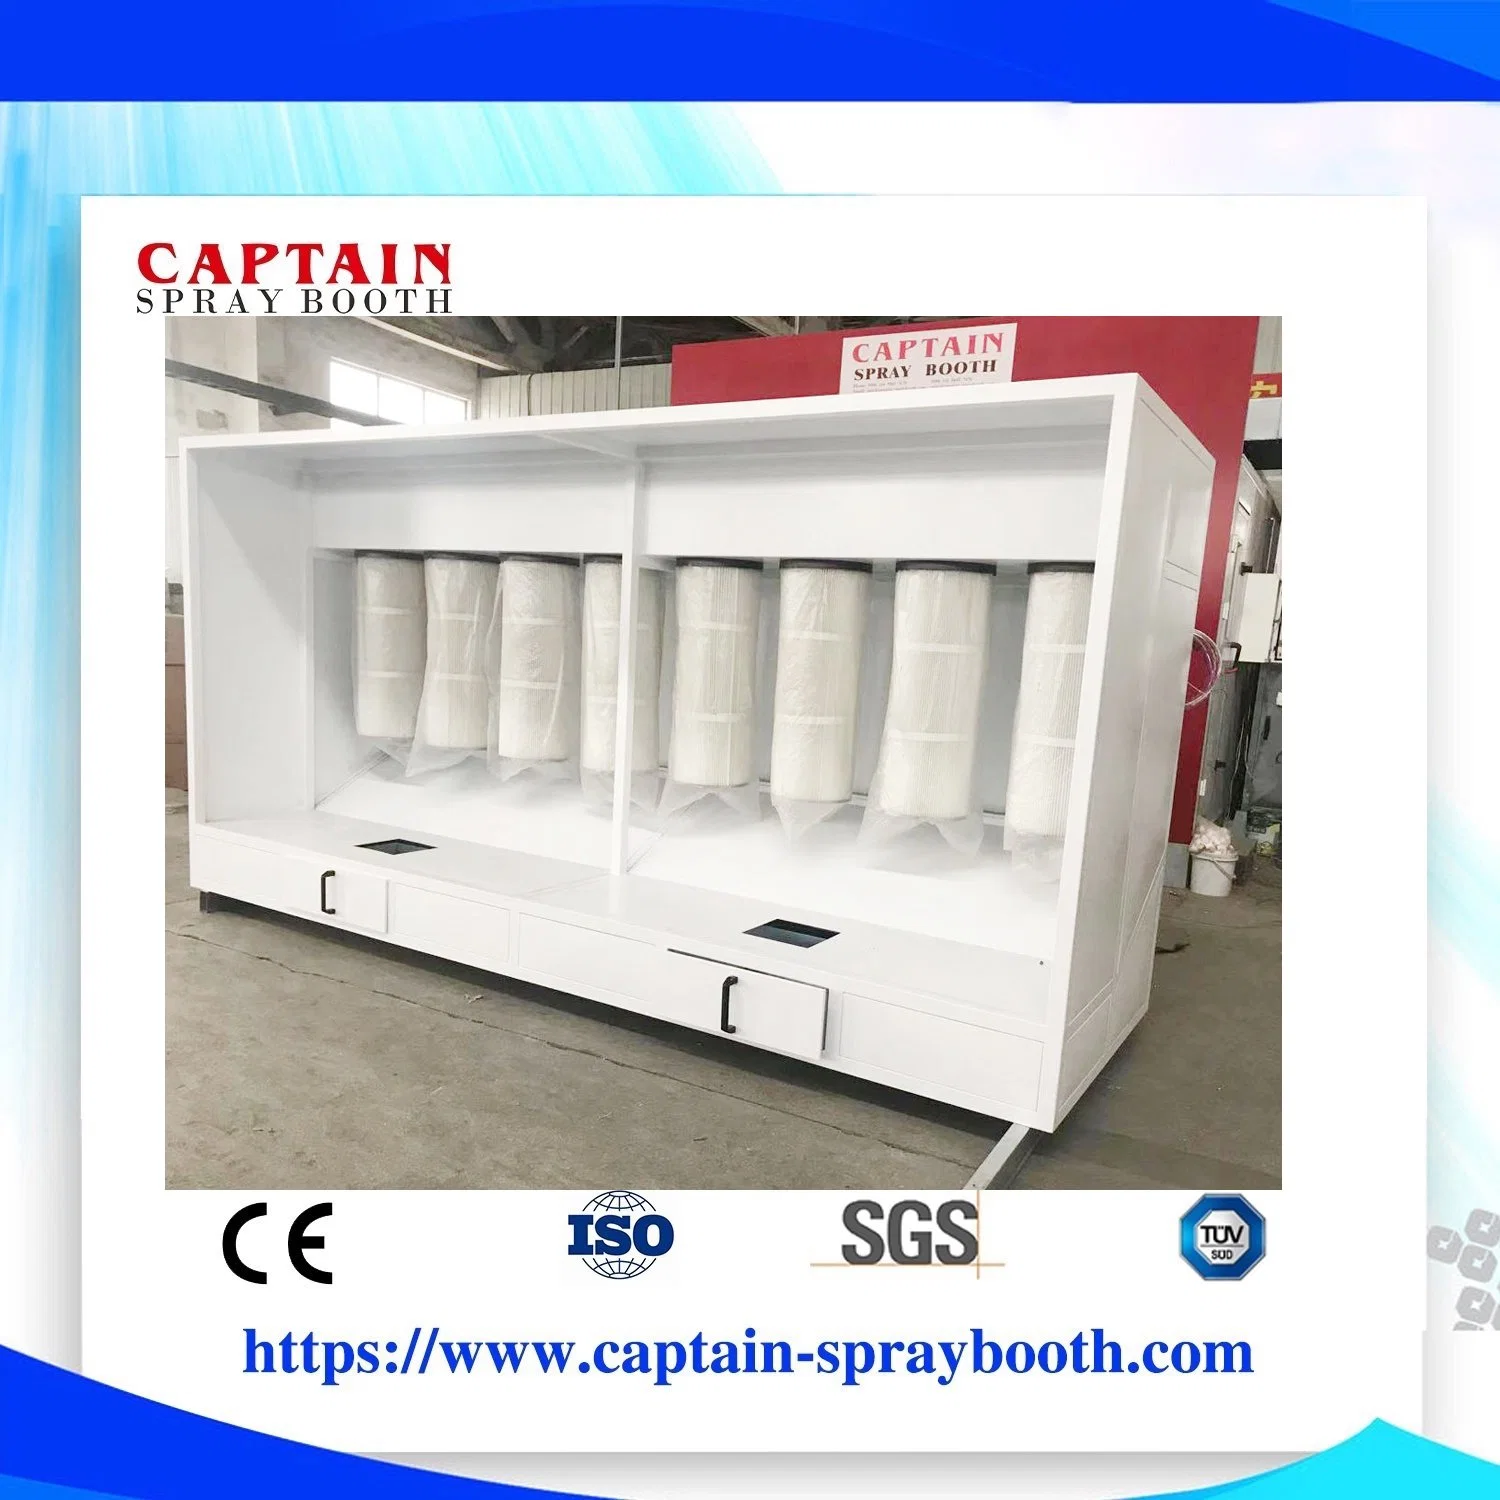 La Chine nouvelle cabine de pulvérisation de peinture en poudre personnalisable Matériel de peinture avec ce rideau d'eau cabine de pulvérisation pour le mobilier Matériel de revêtement en poudre